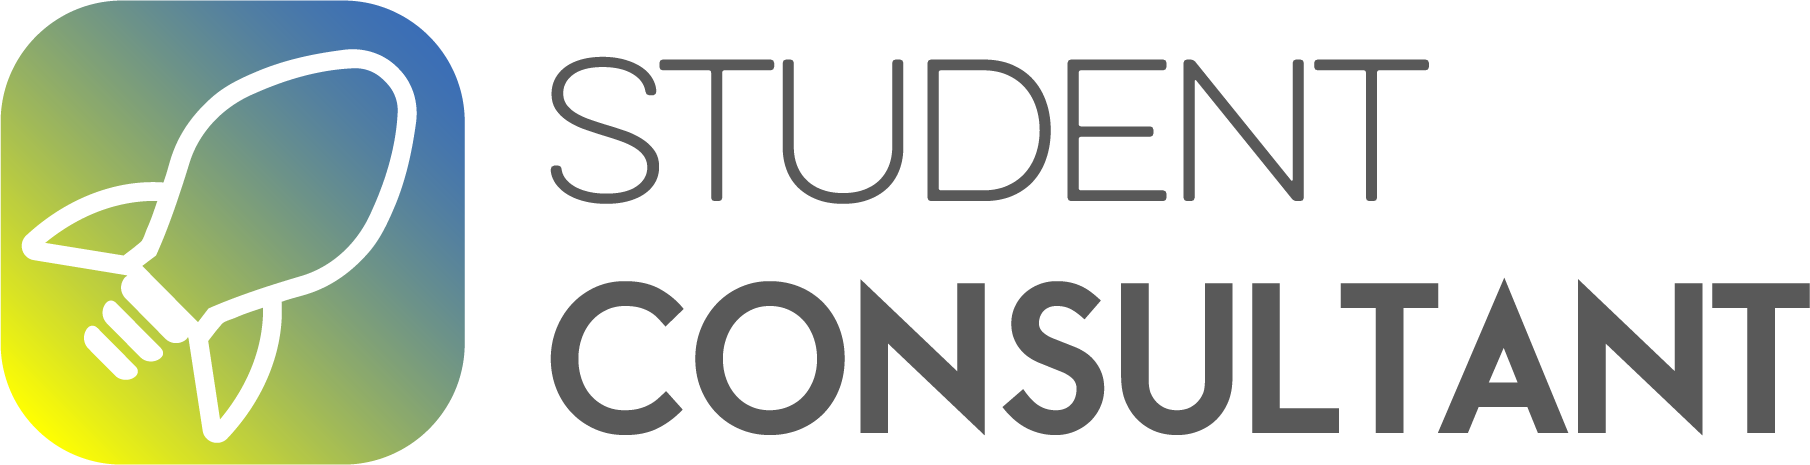 Logo Student Consultant met grijze tekst